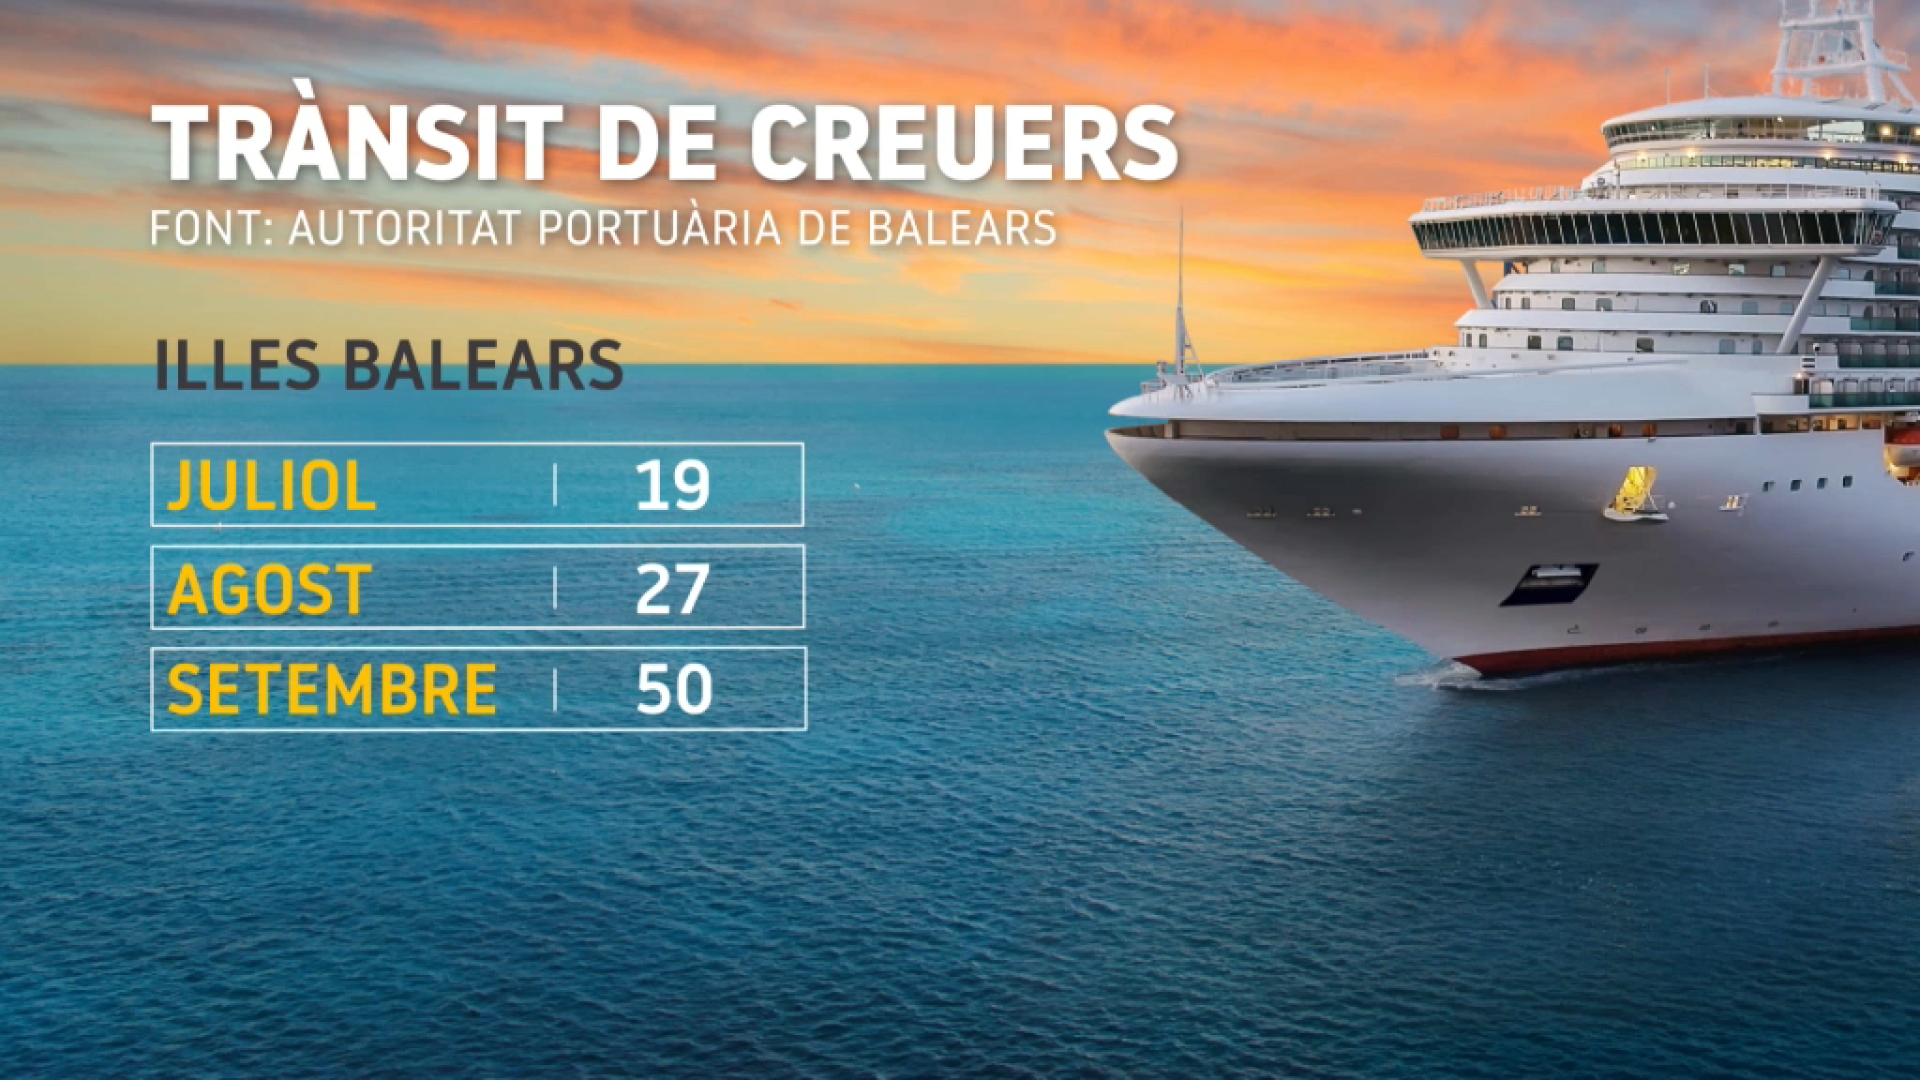 Torna+el+turisme+de+creuers+a+les+Illes+Balears%3A+50+escales+el+setembre